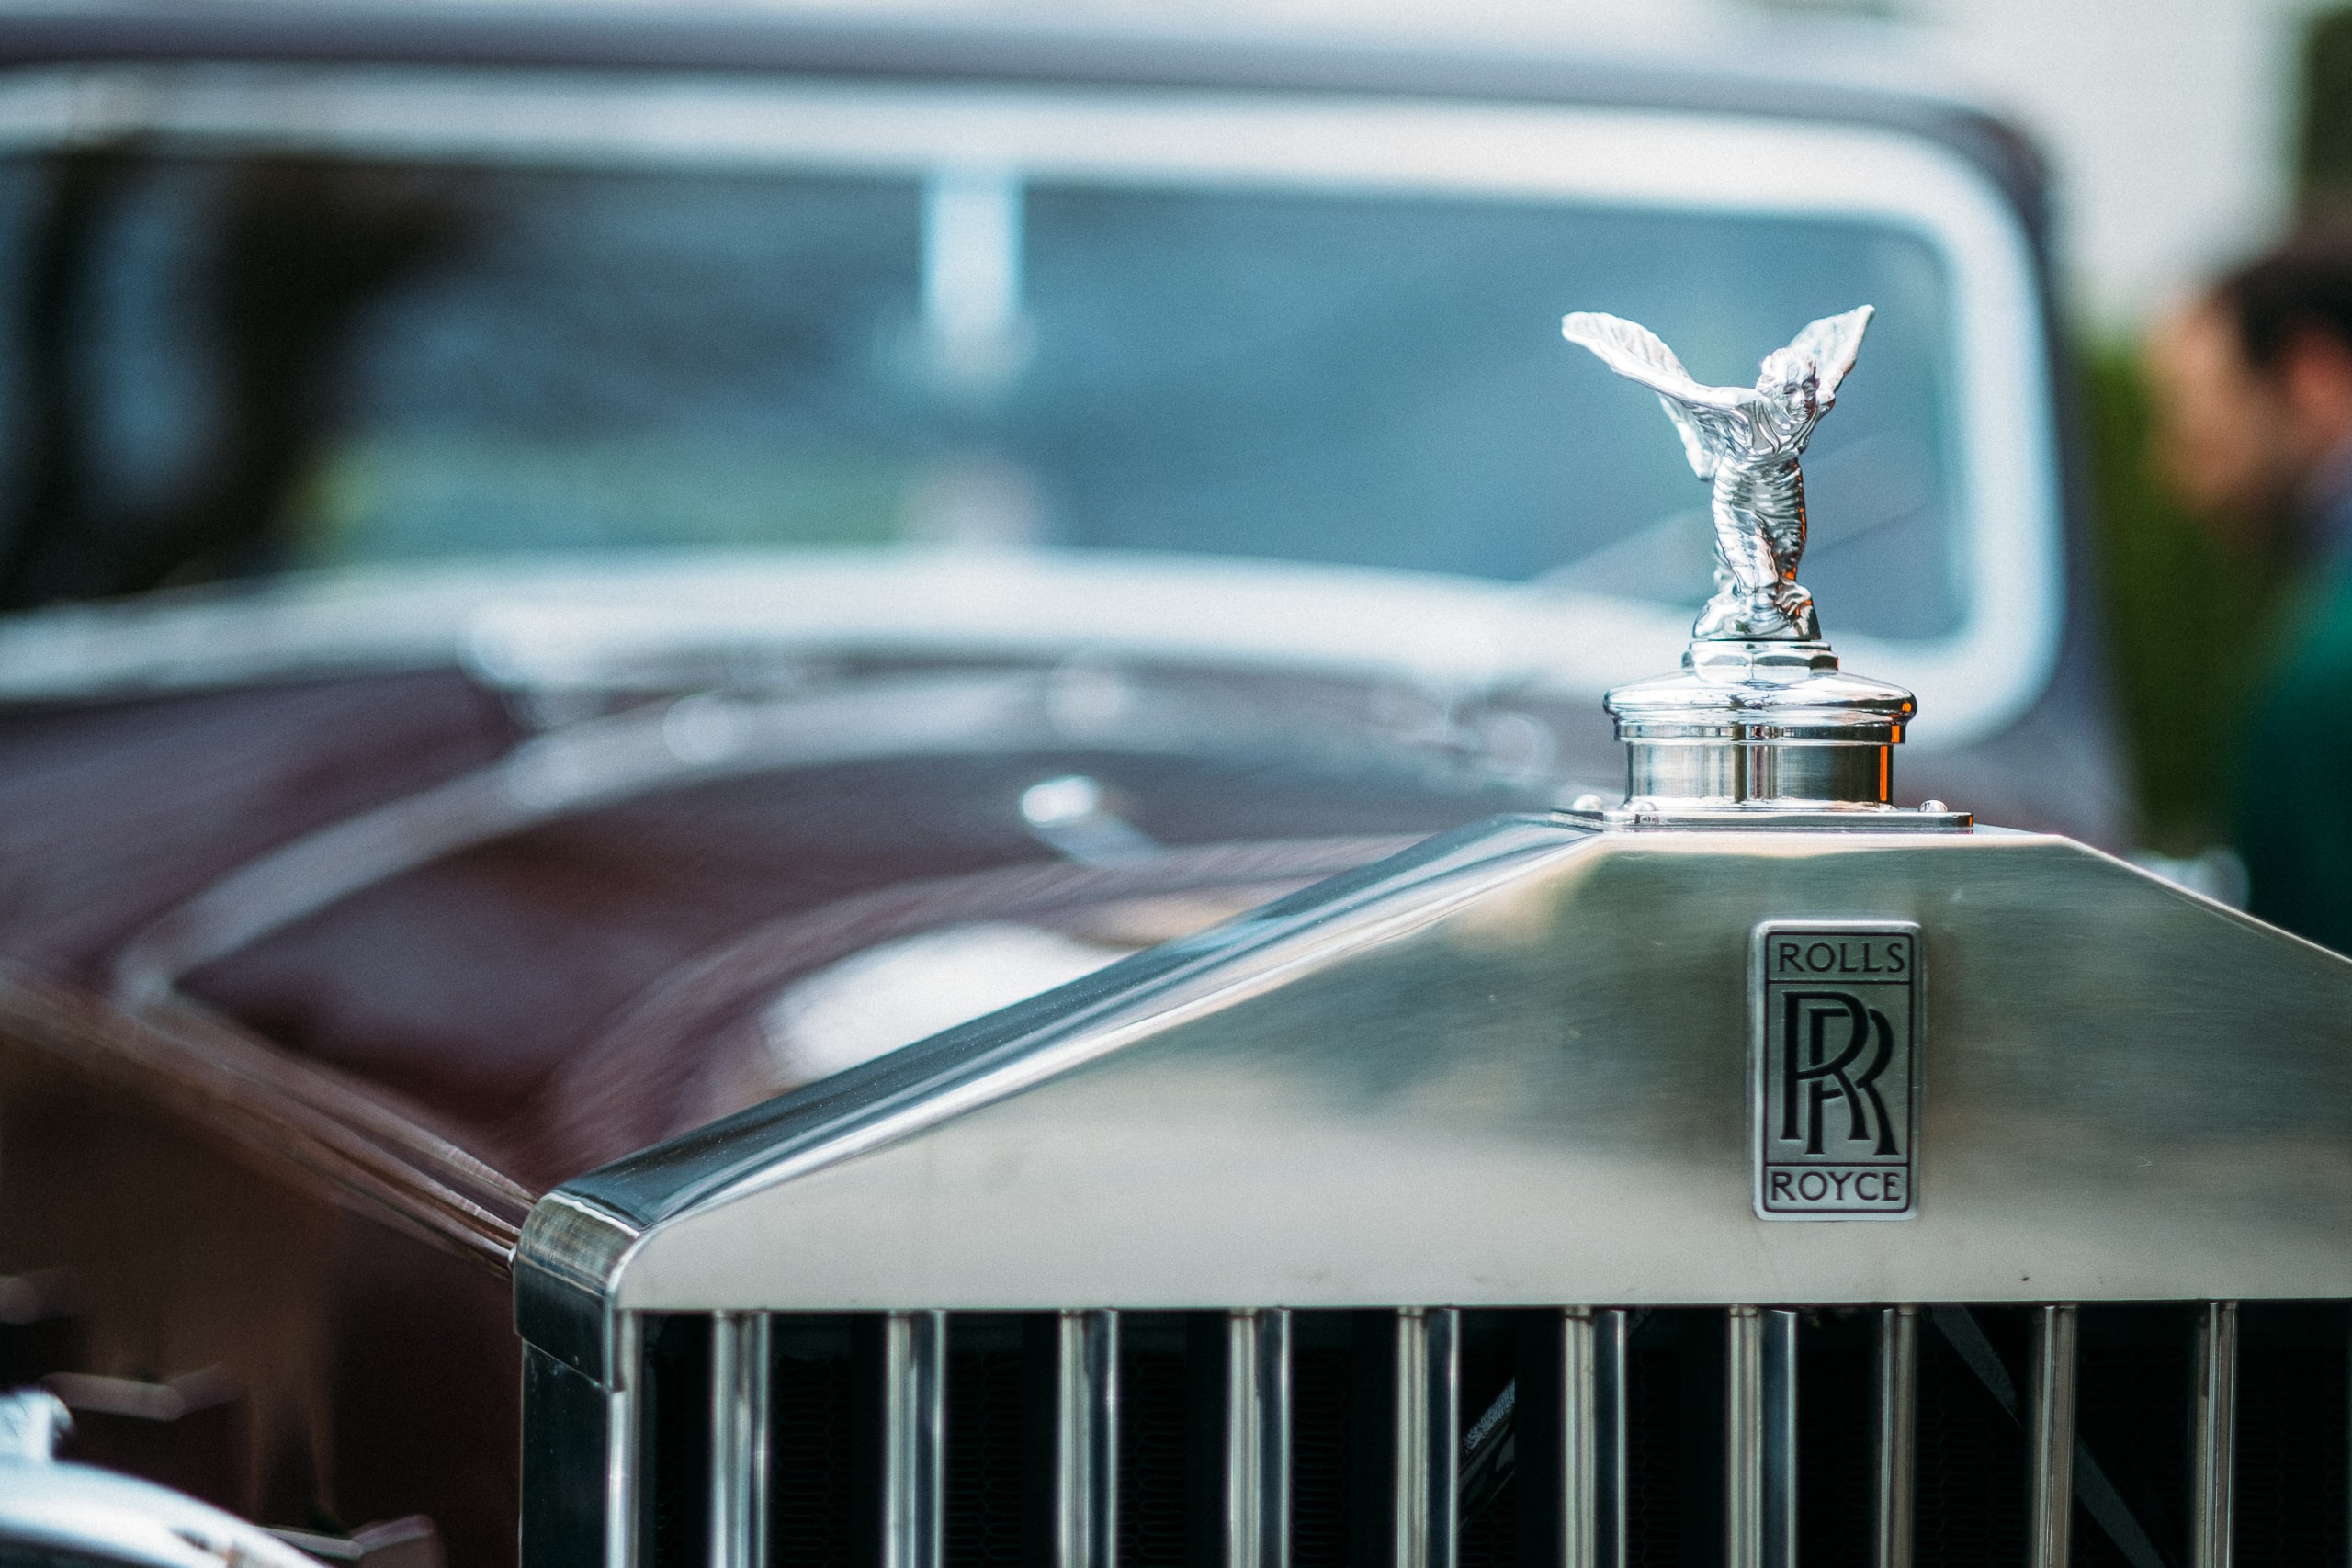 Rolls Royce 1937 Phantom 3 Hình ảnh Sẵn có  Tải xuống Hình ảnh Ngay bây  giờ  Xưa cũ Hoa Kỳ Phong cách retro  iStock